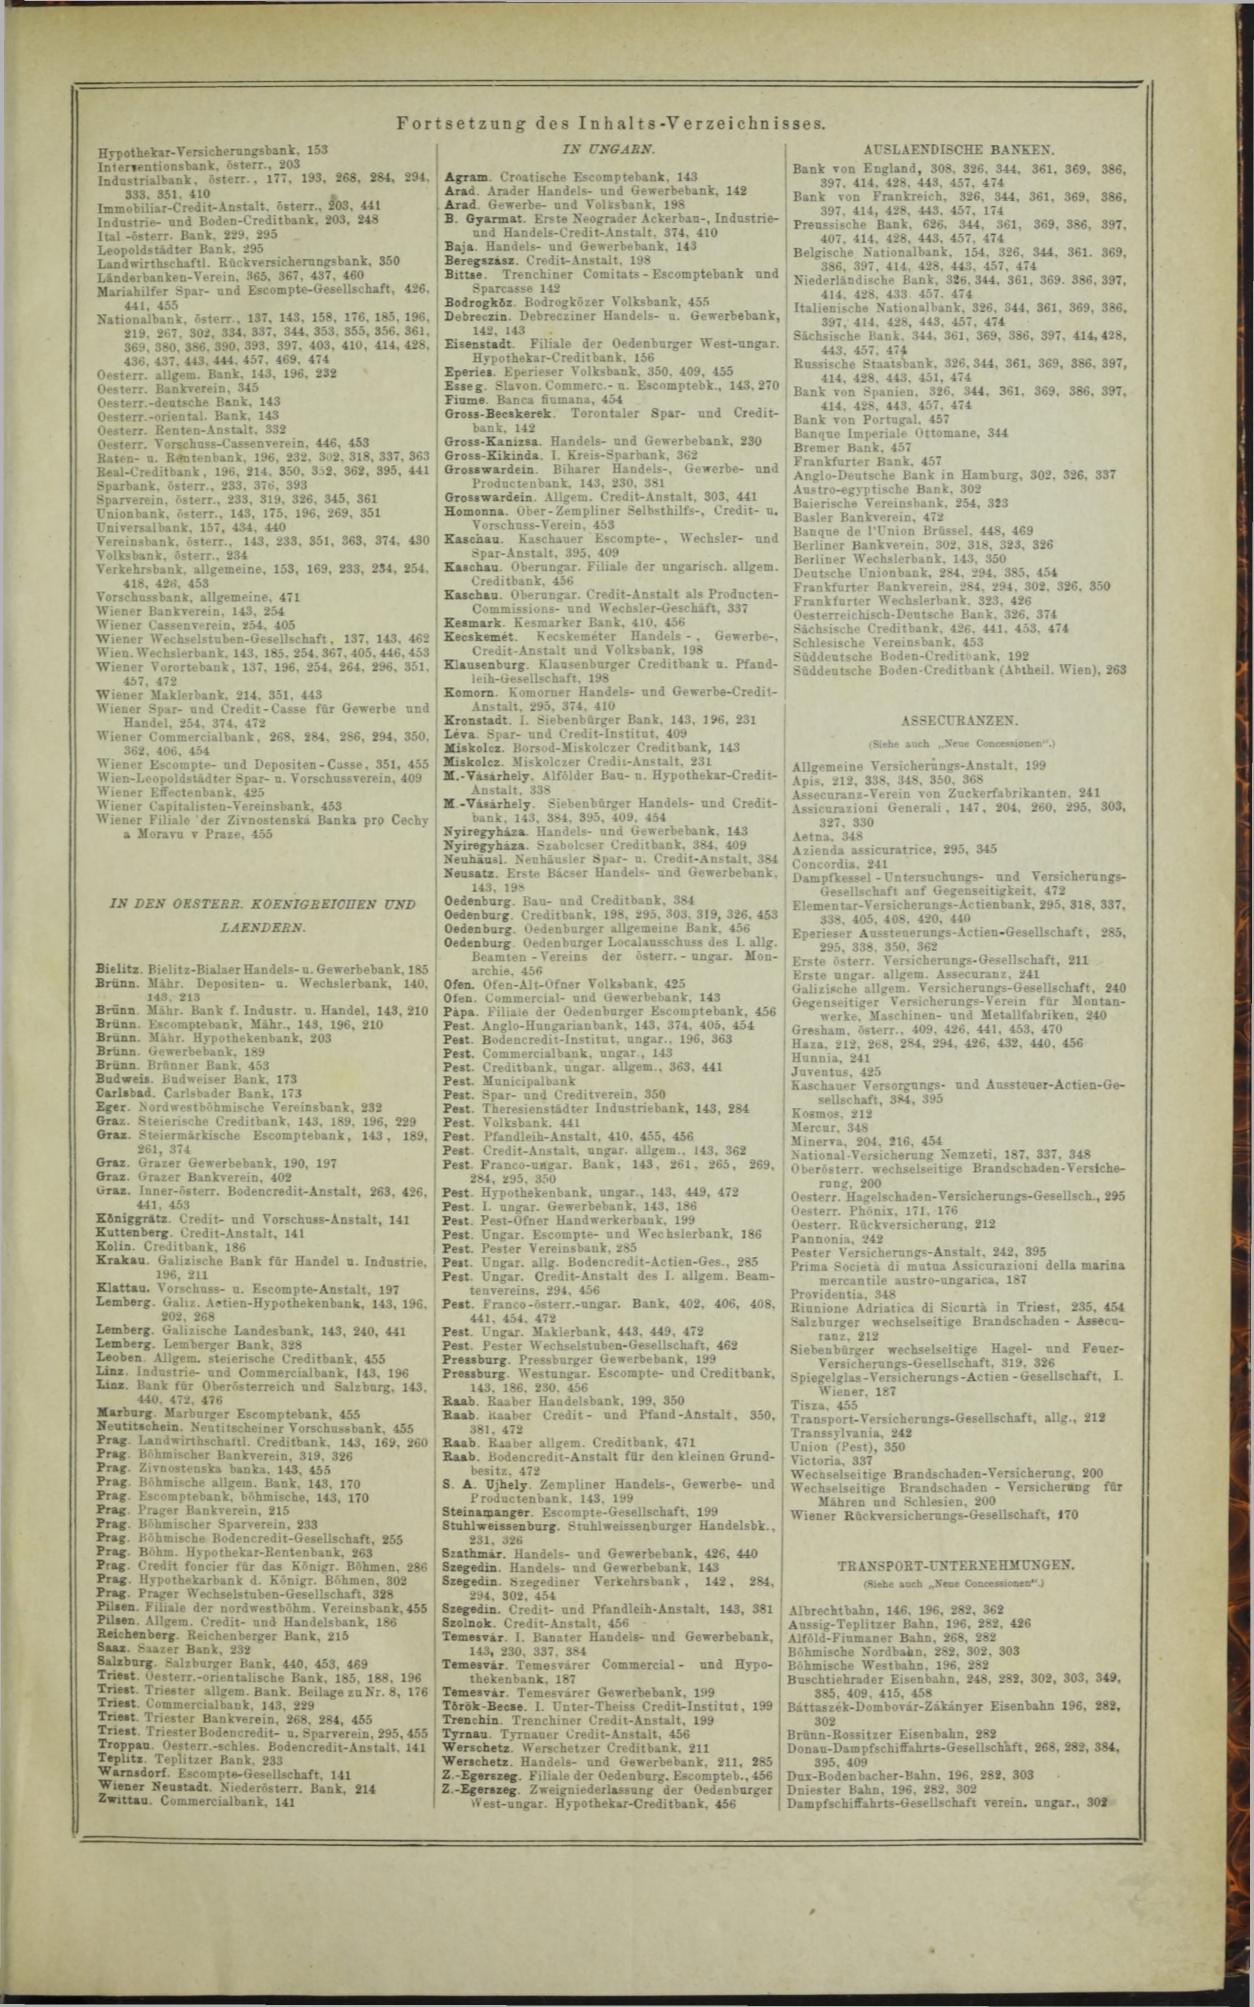 Der Tresor 10.12.1872 - Page 15